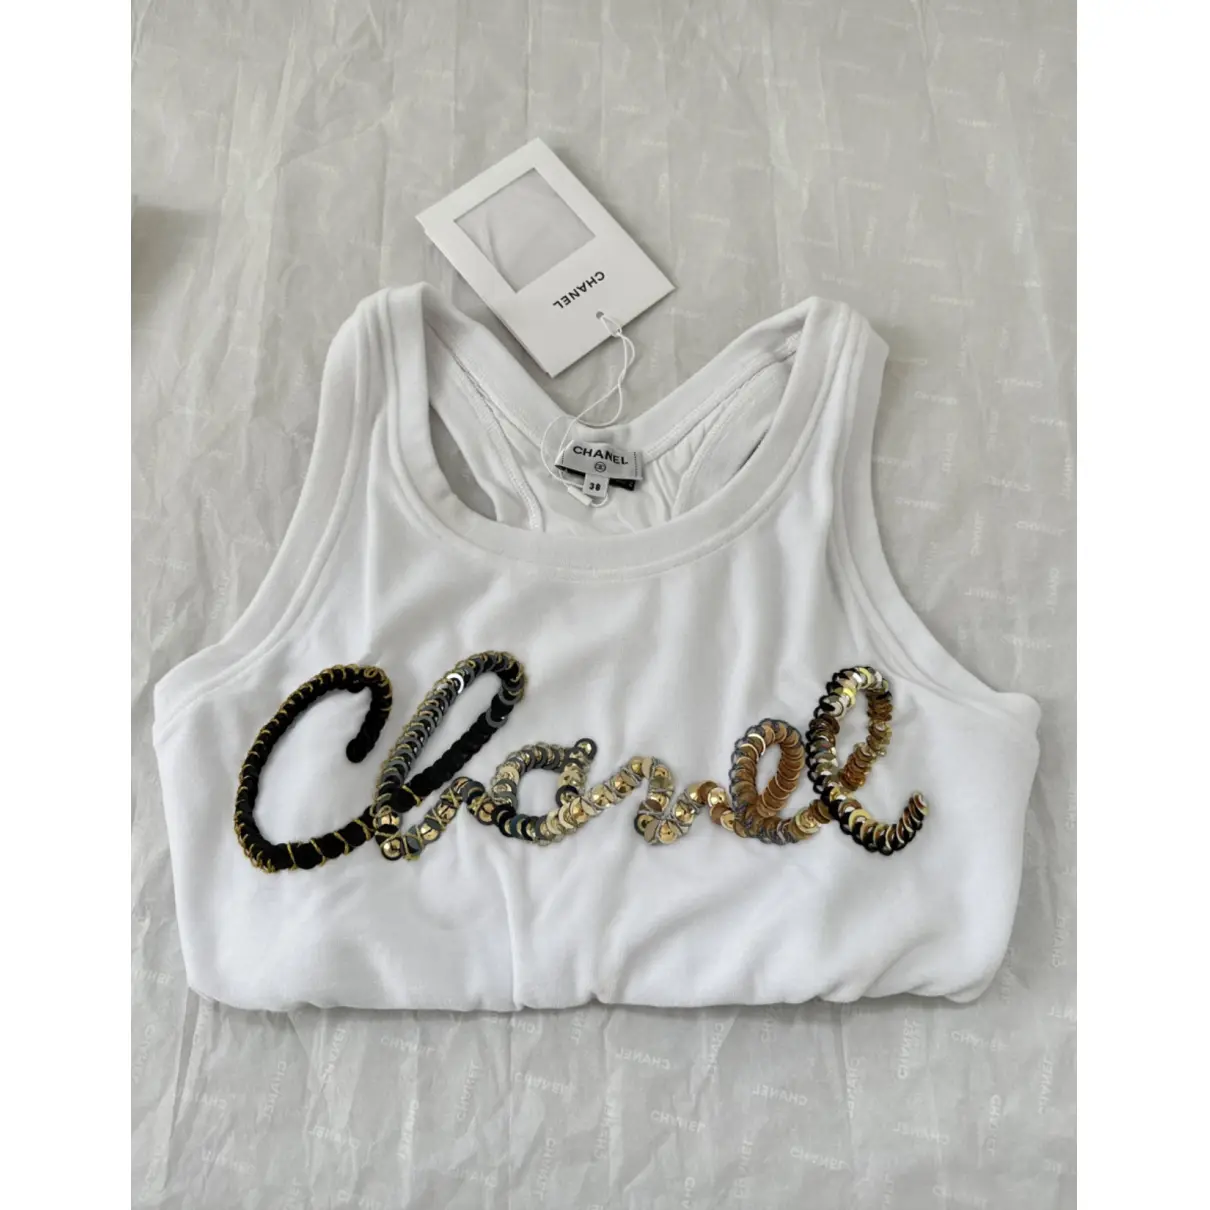 Buy Chanel Jersey top online